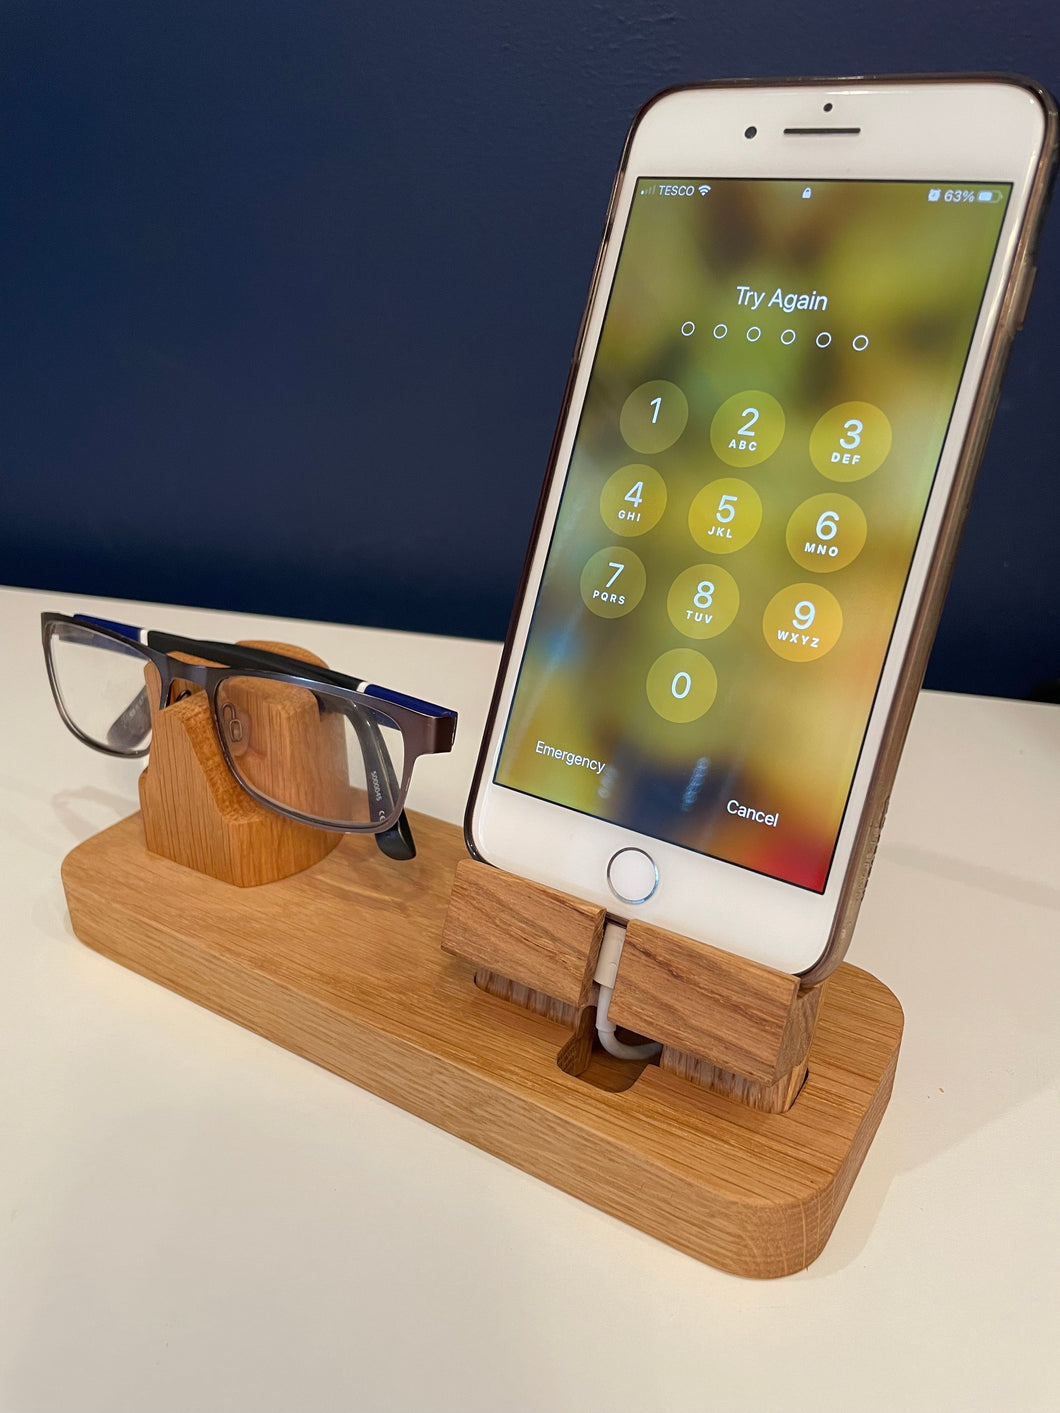 Phone and glasses holder, charging station, desk and bedside organiser